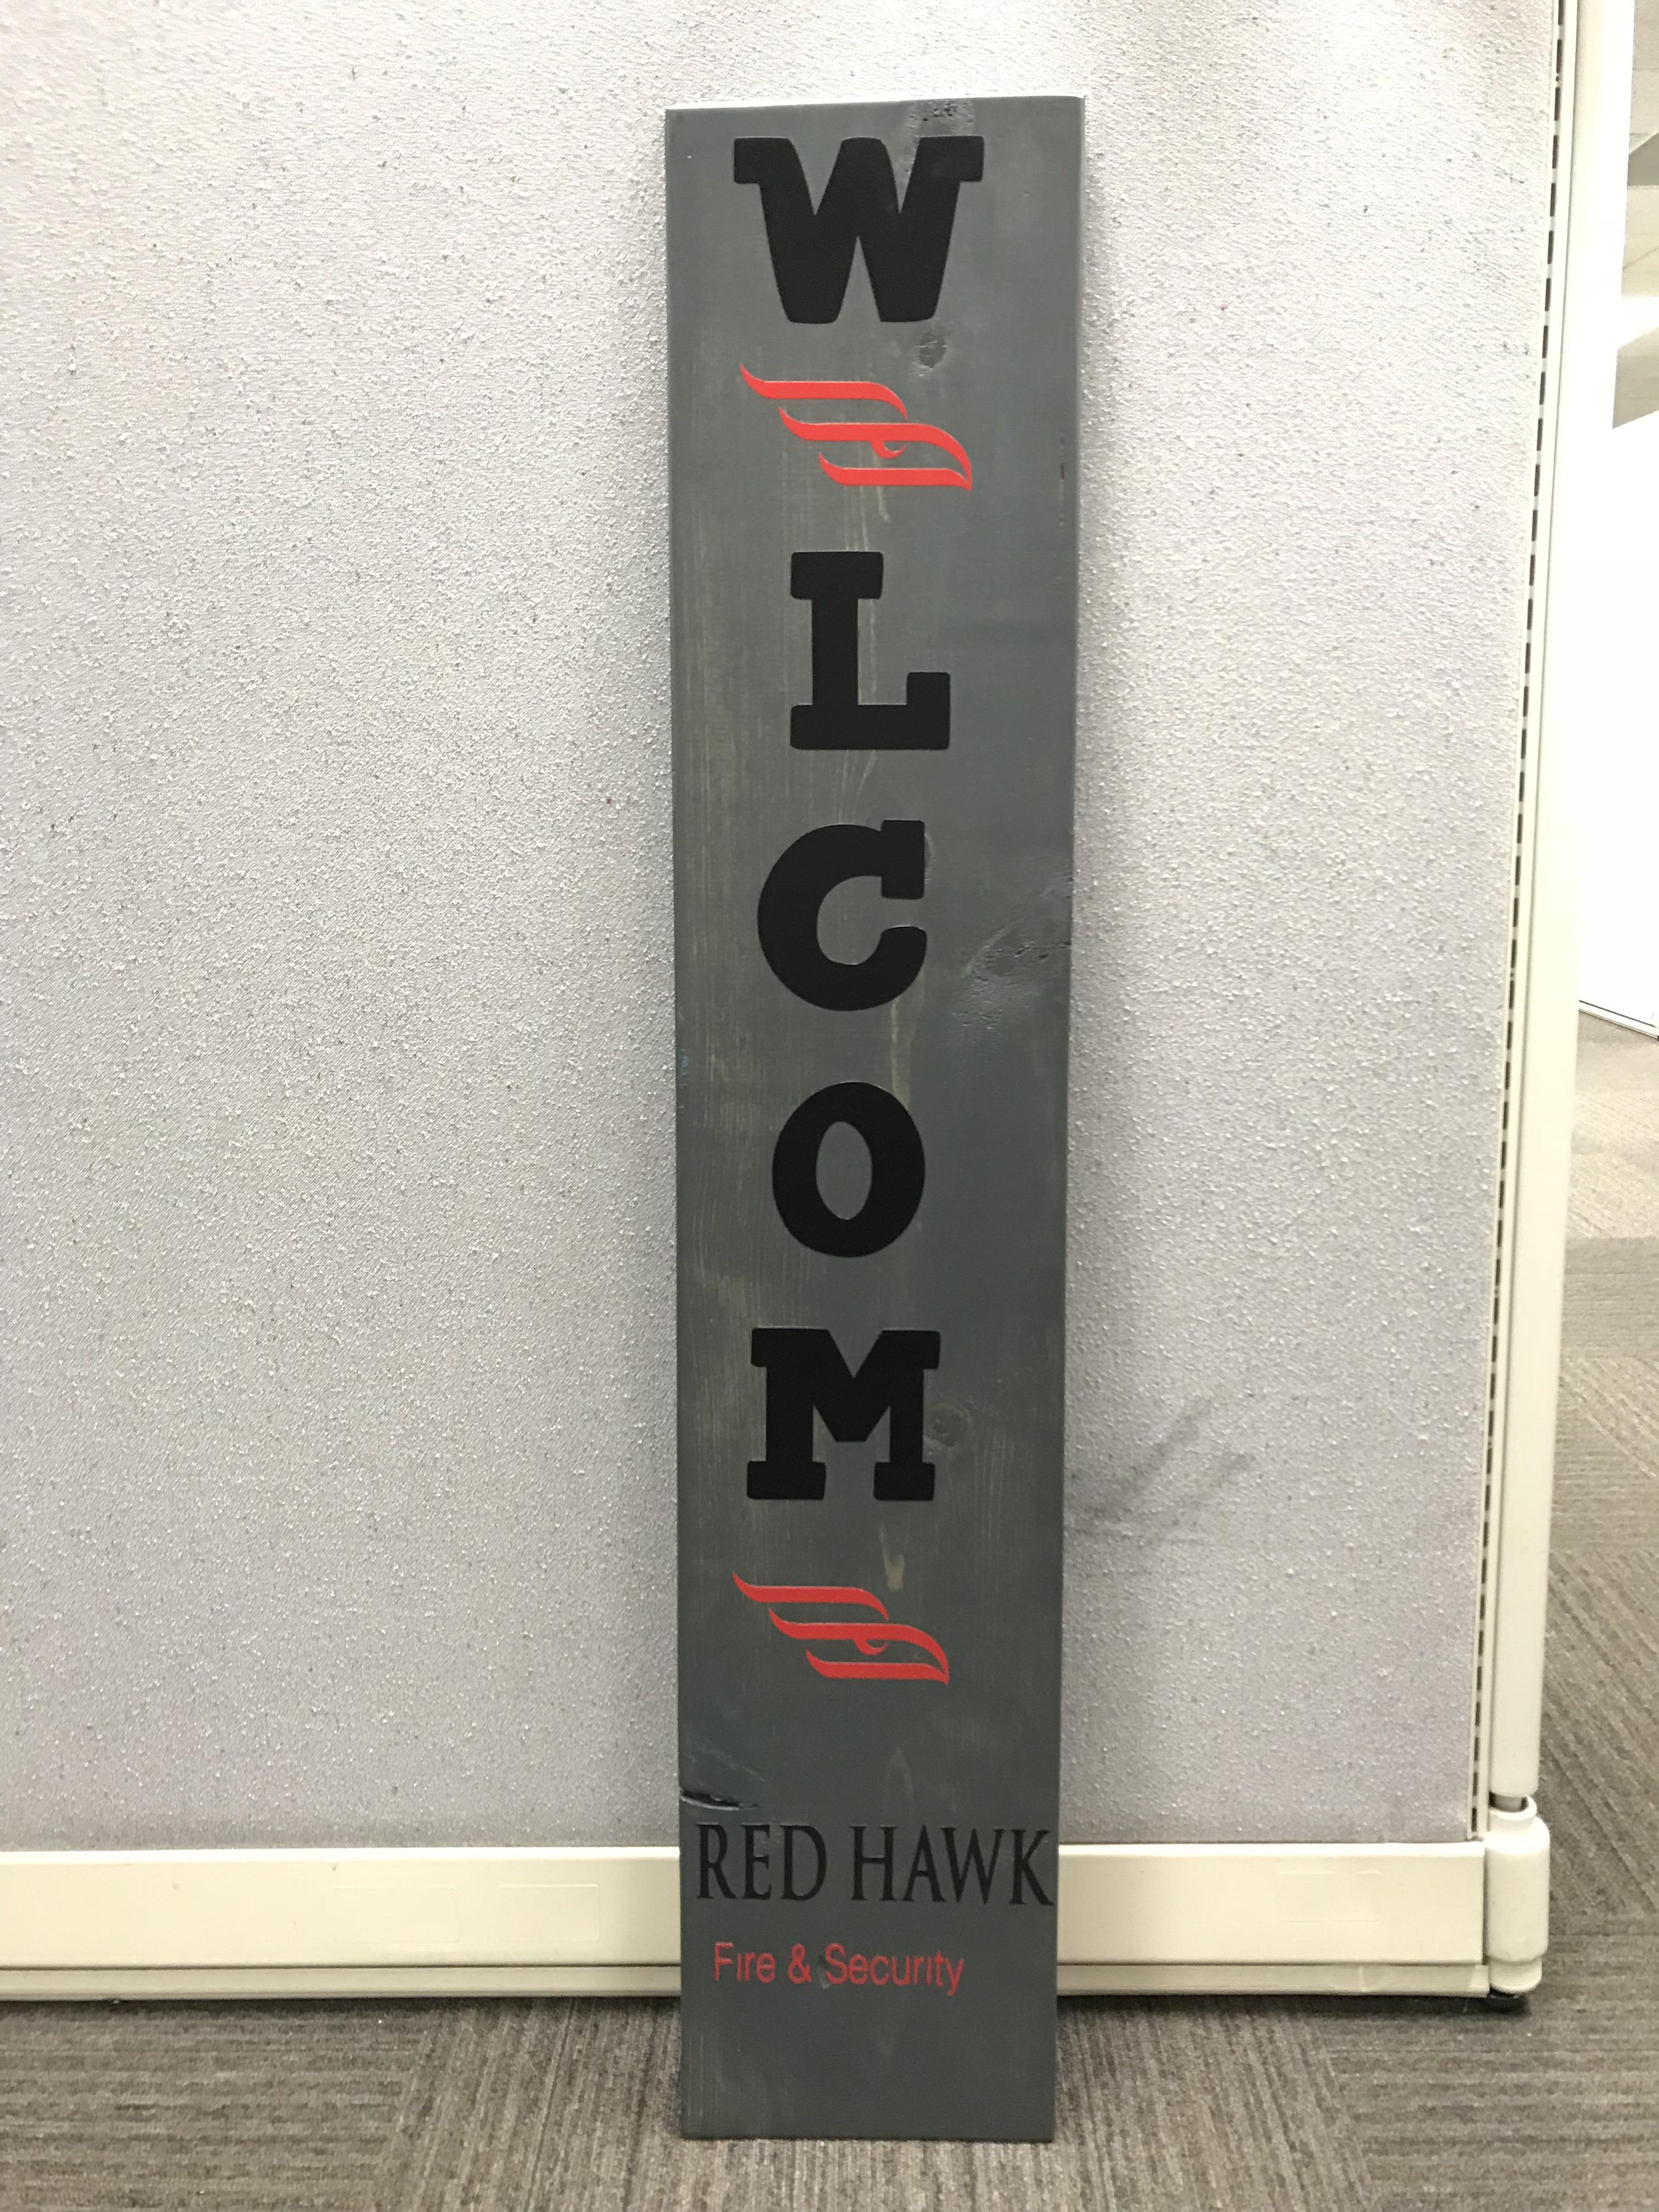 Red Hawk Fire Logo - Stefan Yost - General Manager - Red Hawk Fire & Security | LinkedIn